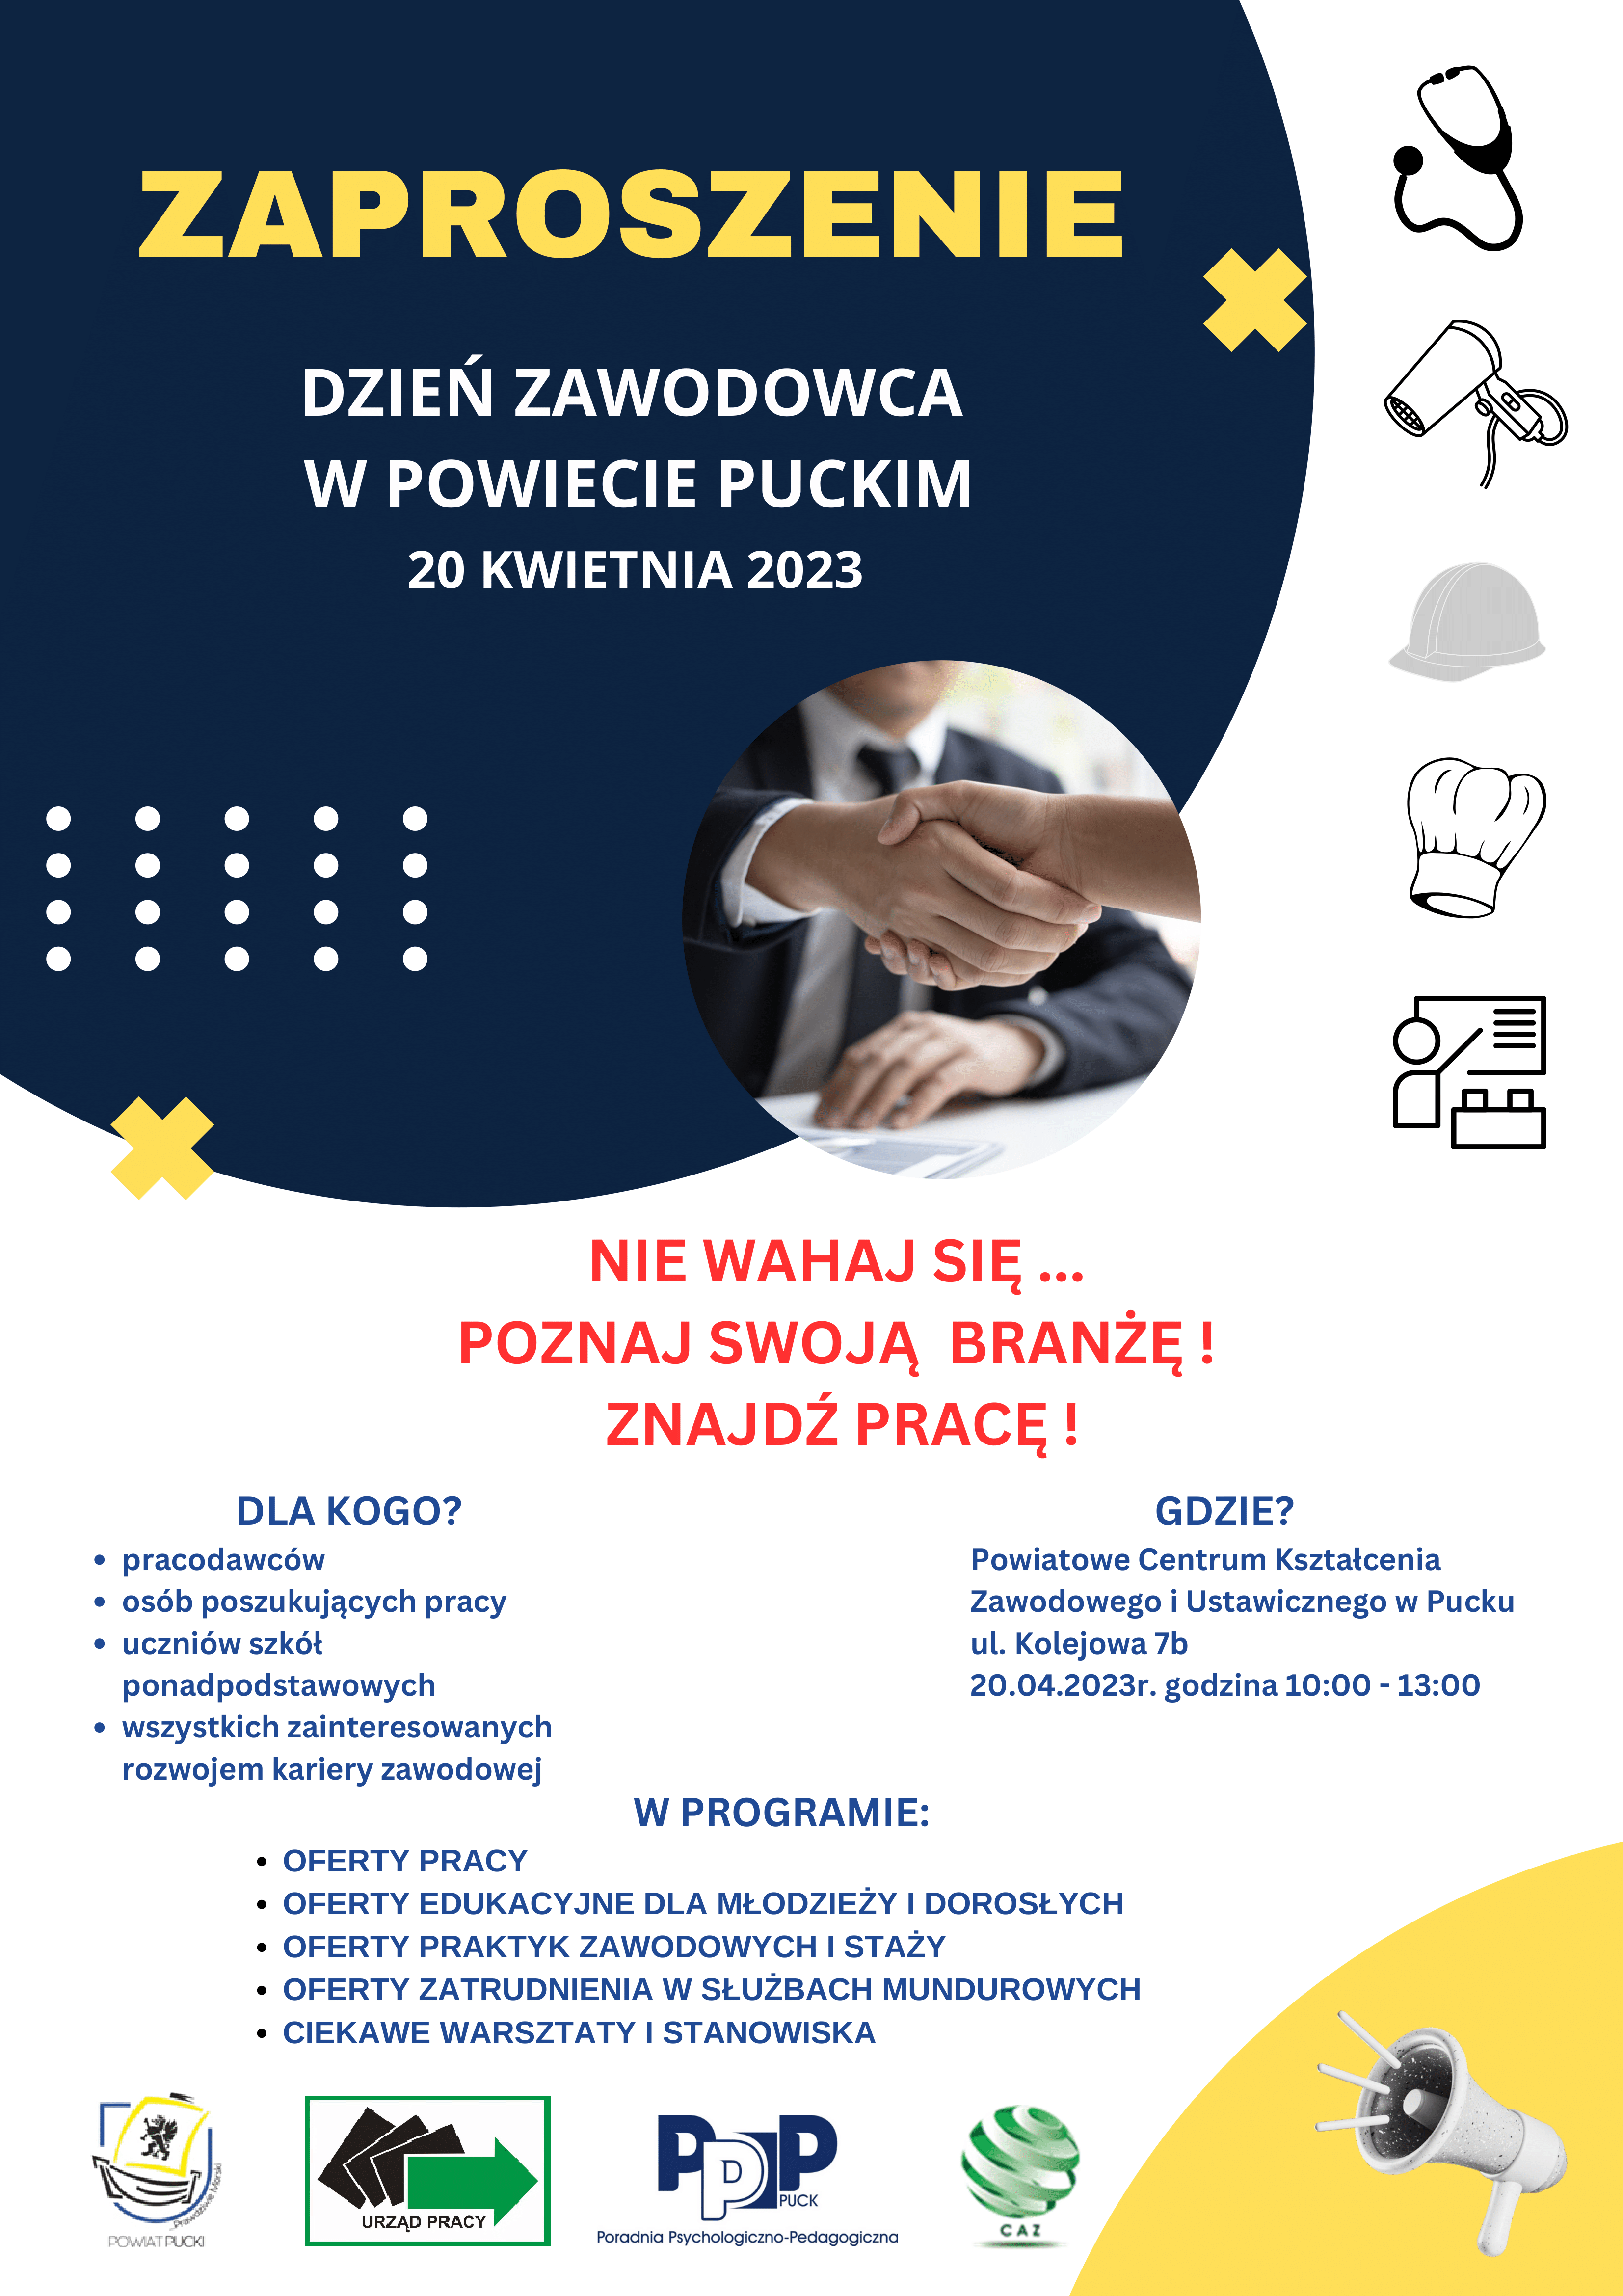 DZIEŃ_ZAWODOWCA-zaproszenie_plakat-1